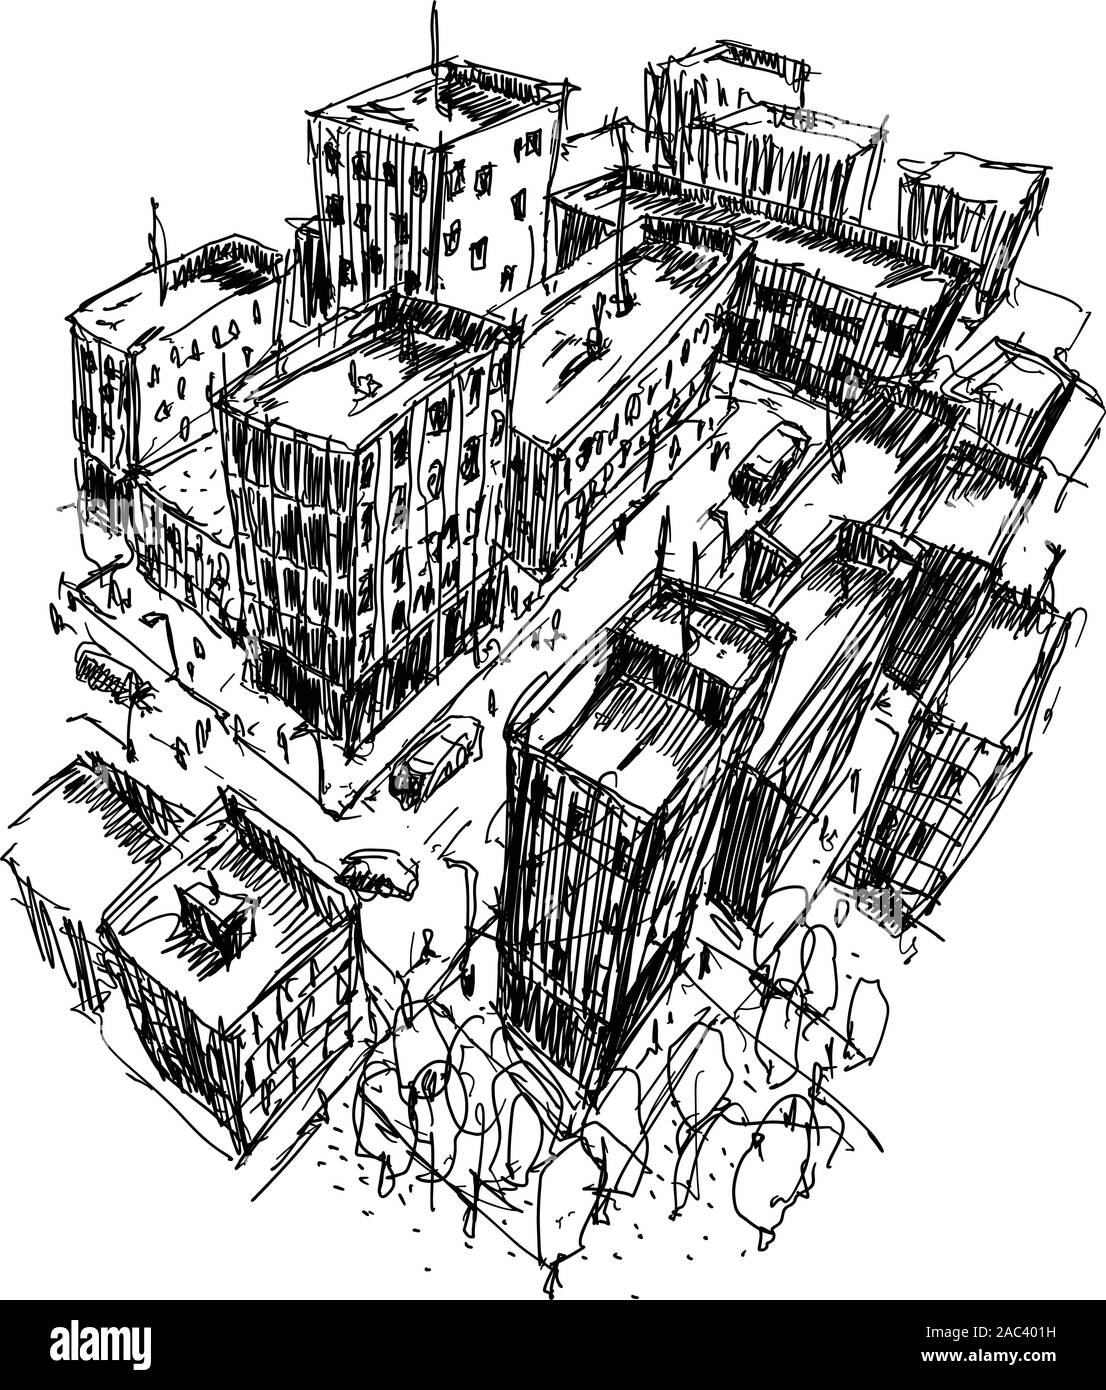 Croquis d'architecture dessiné à la main d'une ville moderne avec des immeubles et dans les rues Illustration de Vecteur